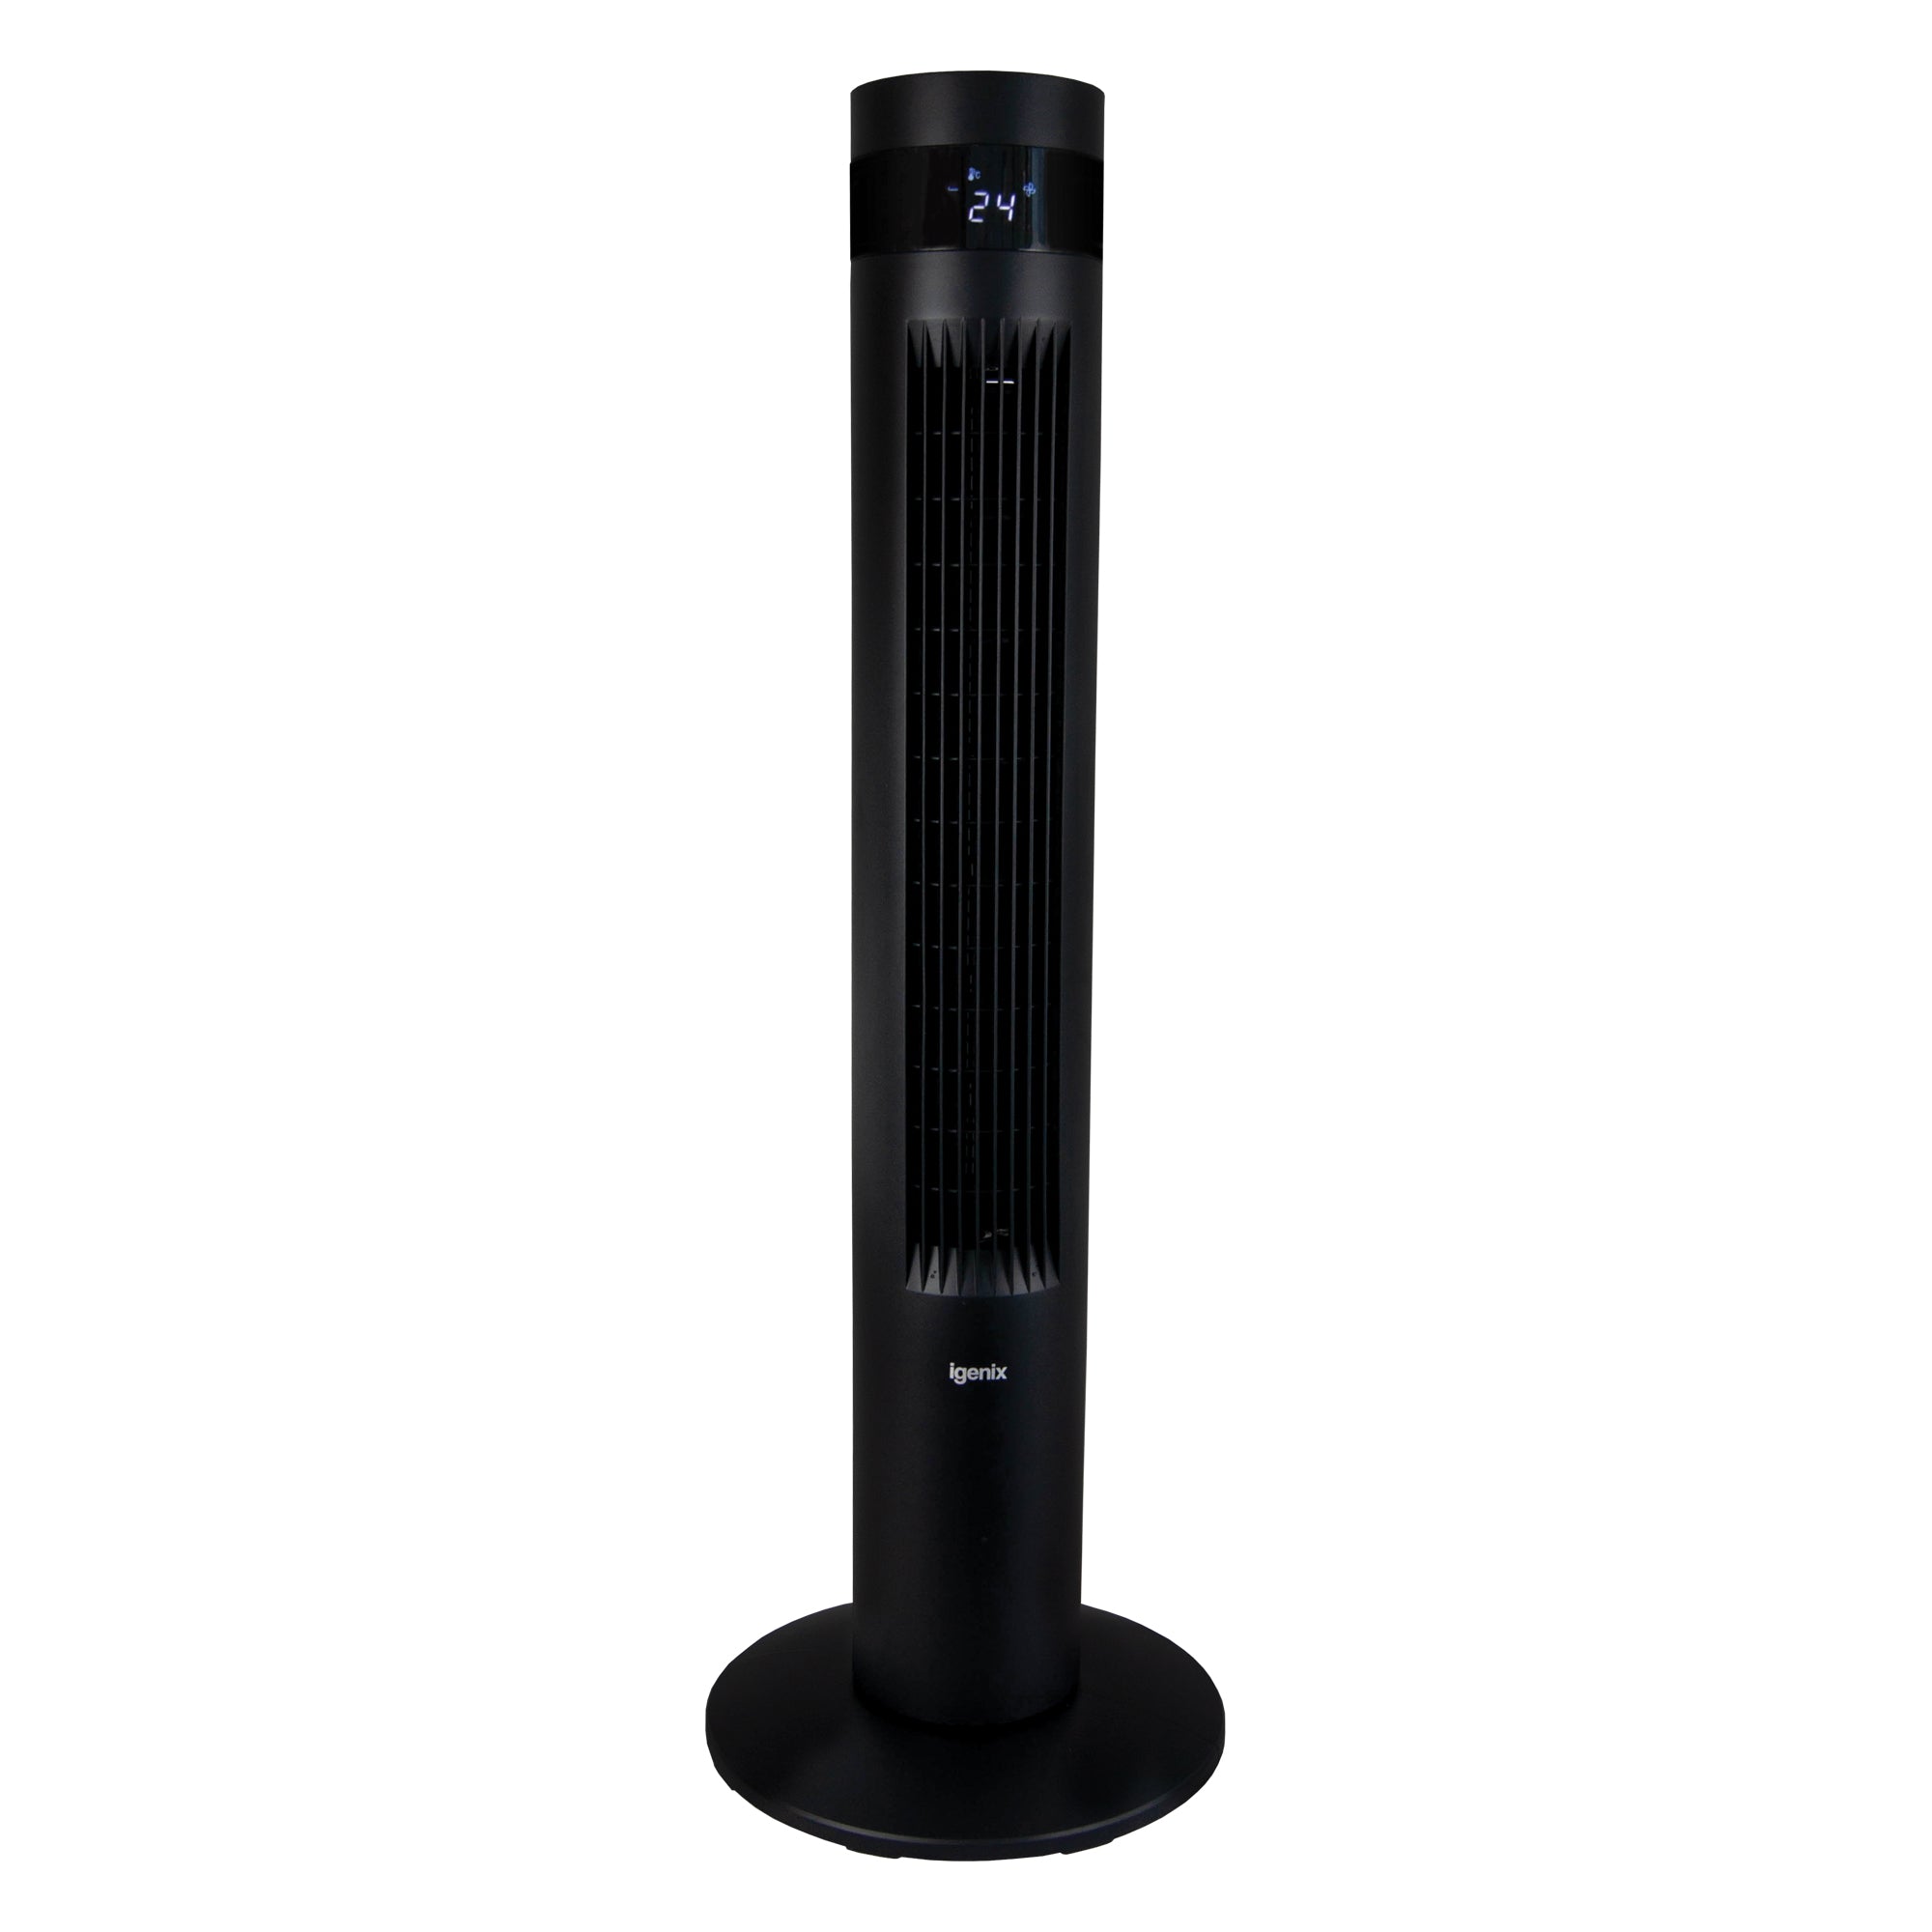 35 Inch Digital Tower Fan, 3 Speed Settings, Black